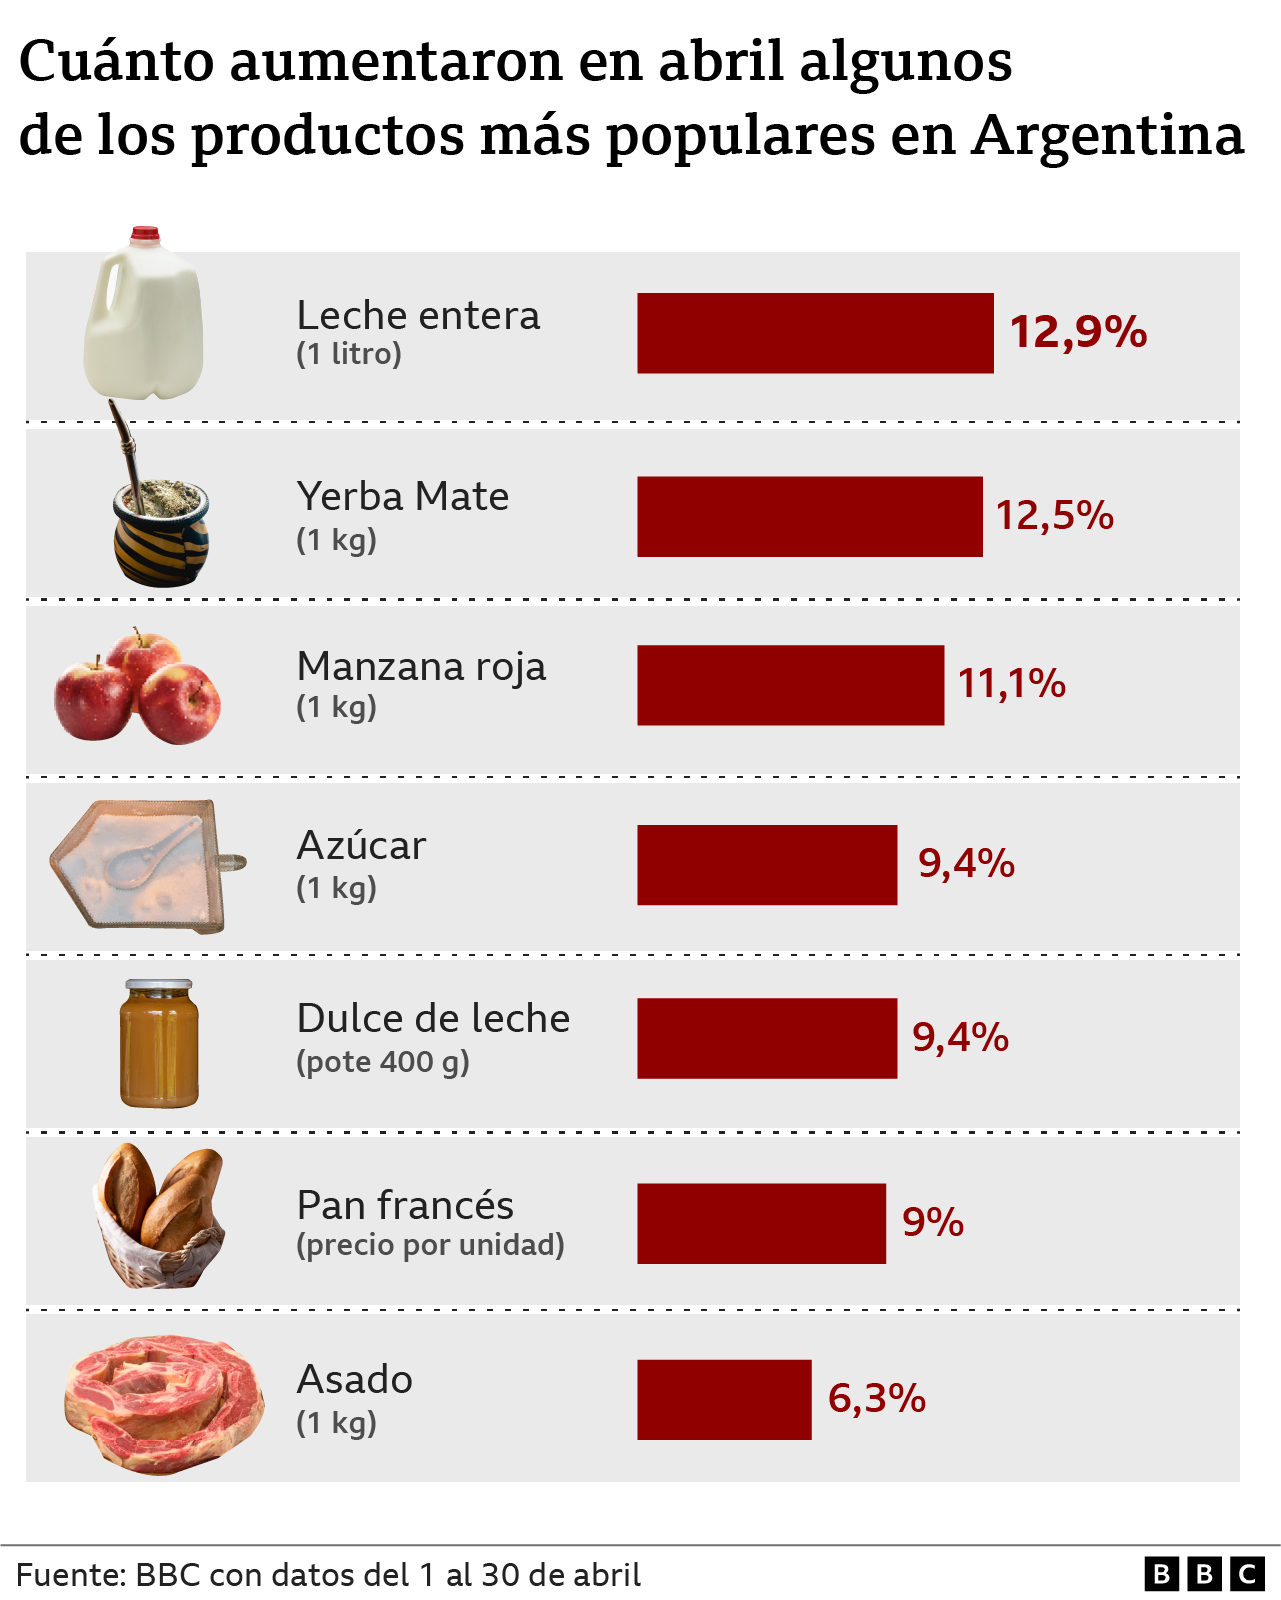 Tabla que muestra cuánto aumentaron en abril algunos de los alimentos más populares en Argentina